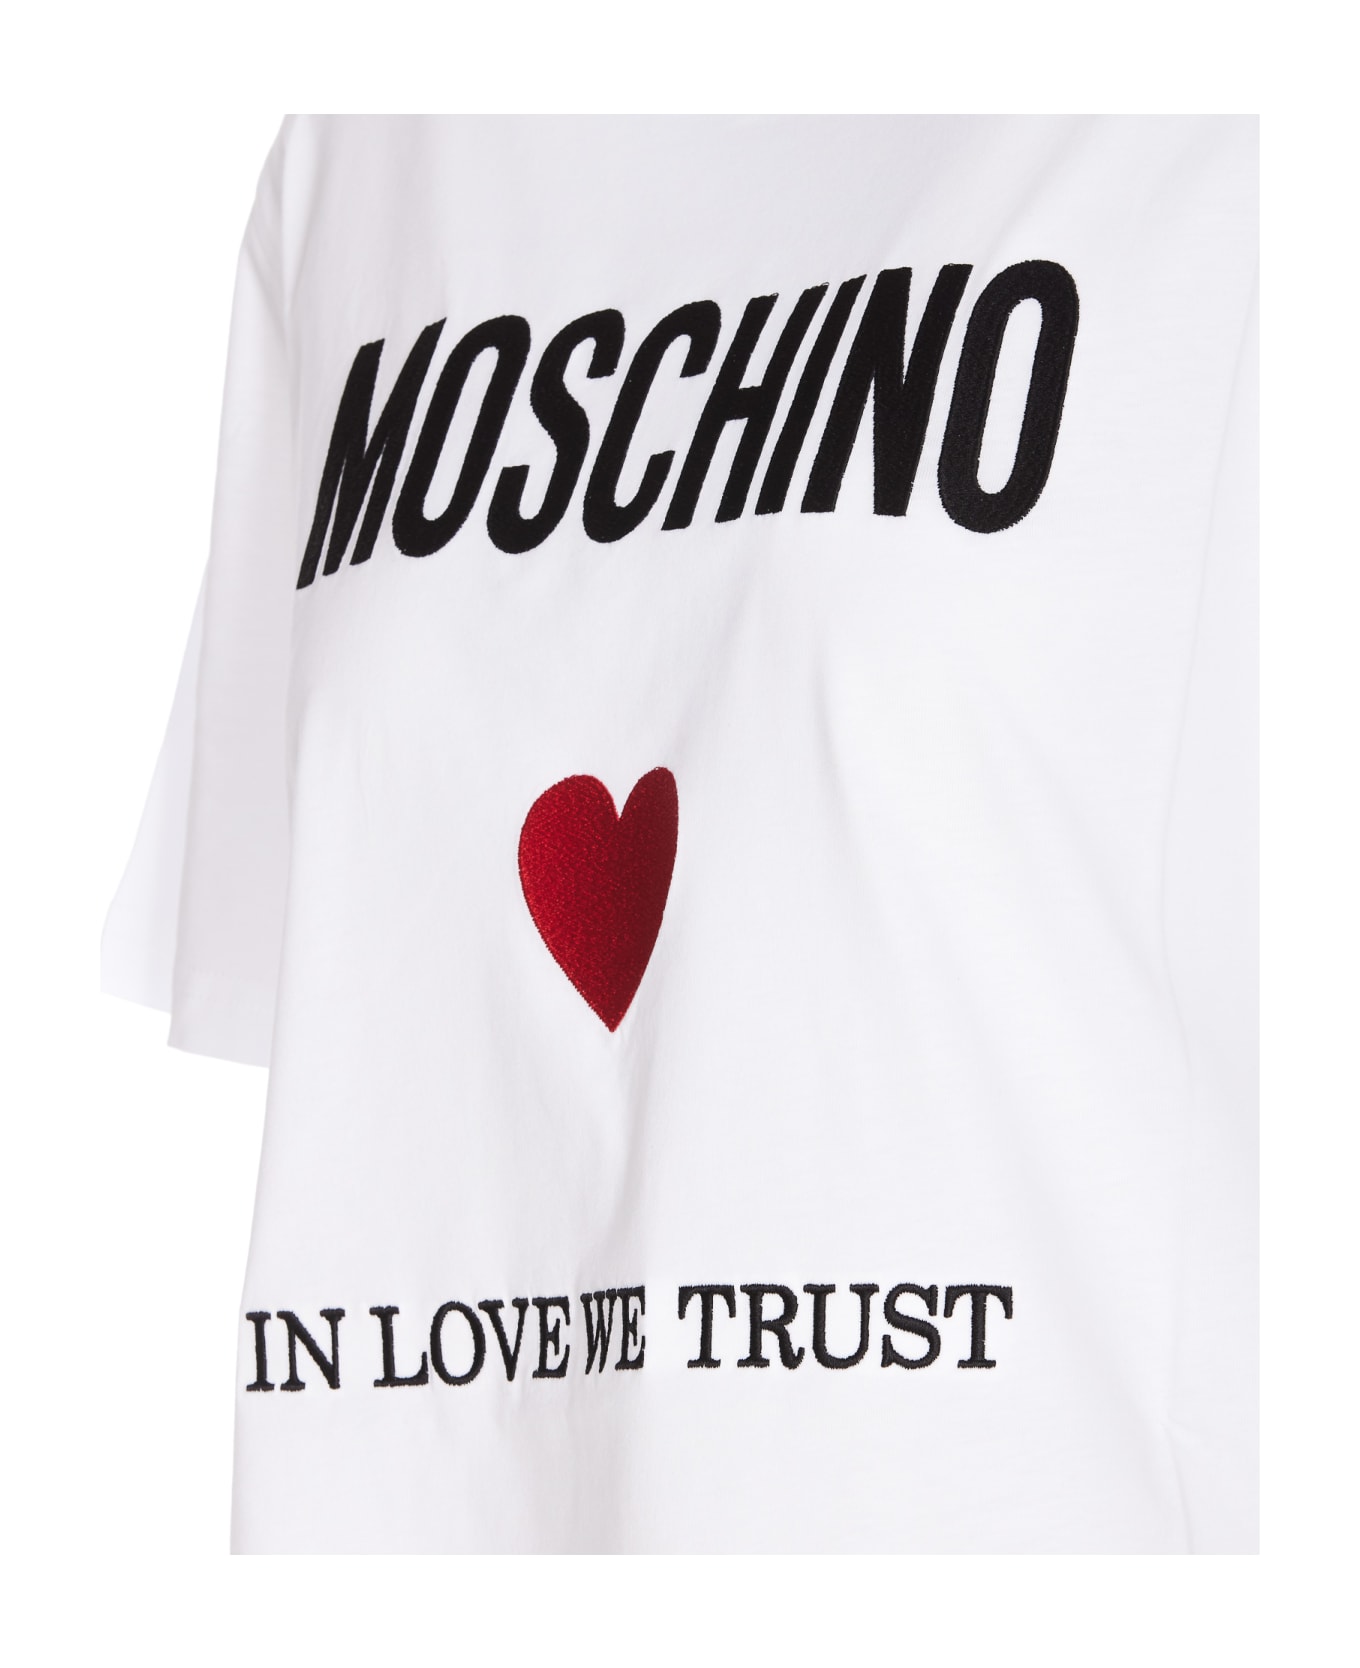 Moschino Love We Trust T-shirt - White